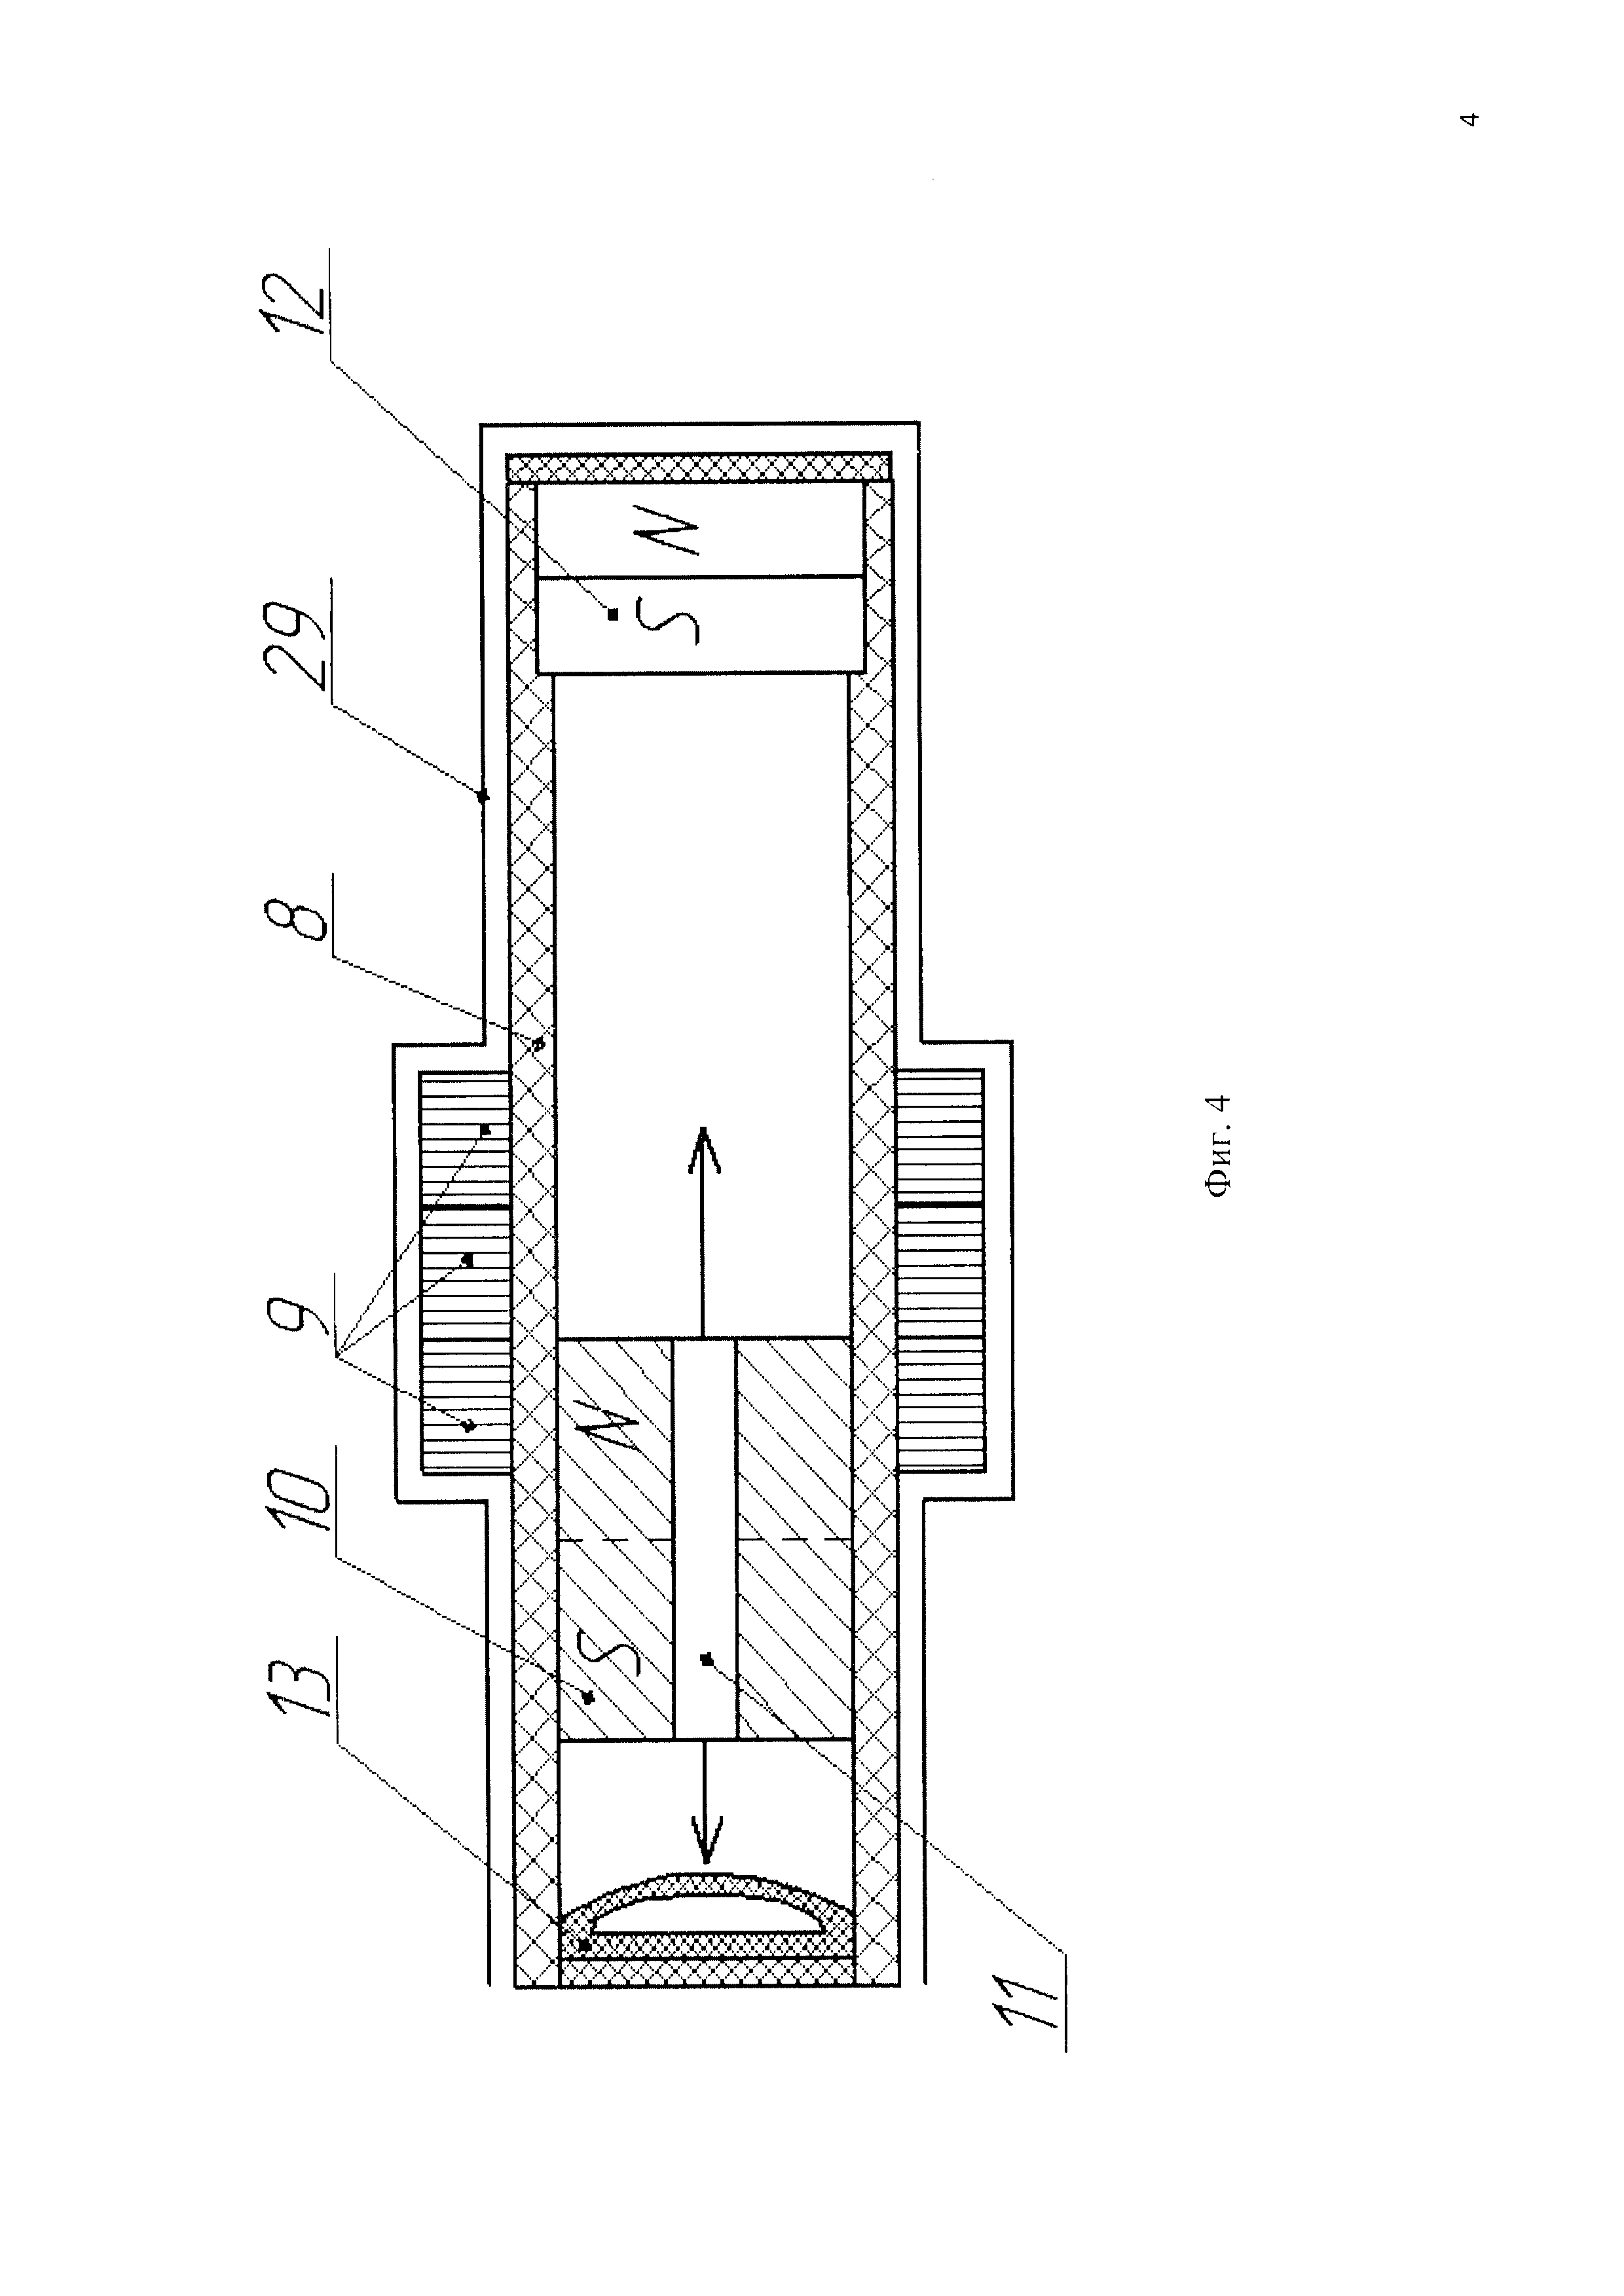 Тихоходный линейный магнитоэлектрический генератор с плоскими катушками (ТИЛИМЭГ ПК)